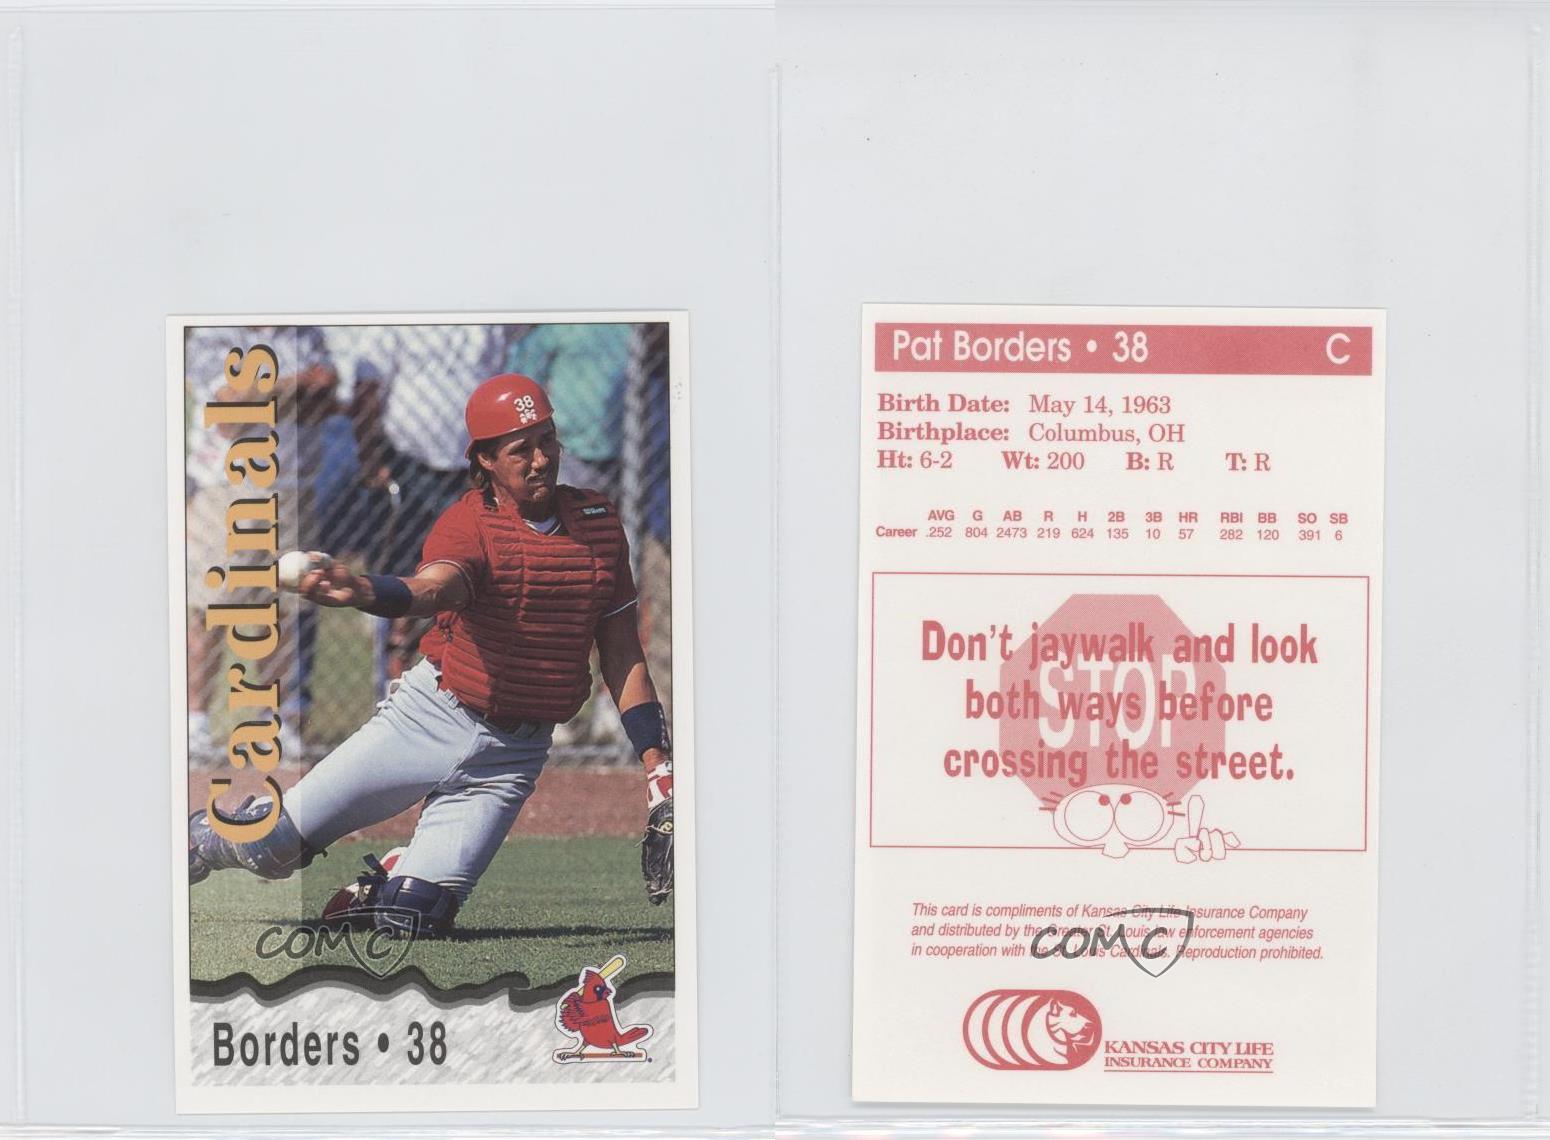 1996 Kansas City Life Insurance St Louis Cardinals Stadium Giveaway Pat  Borders